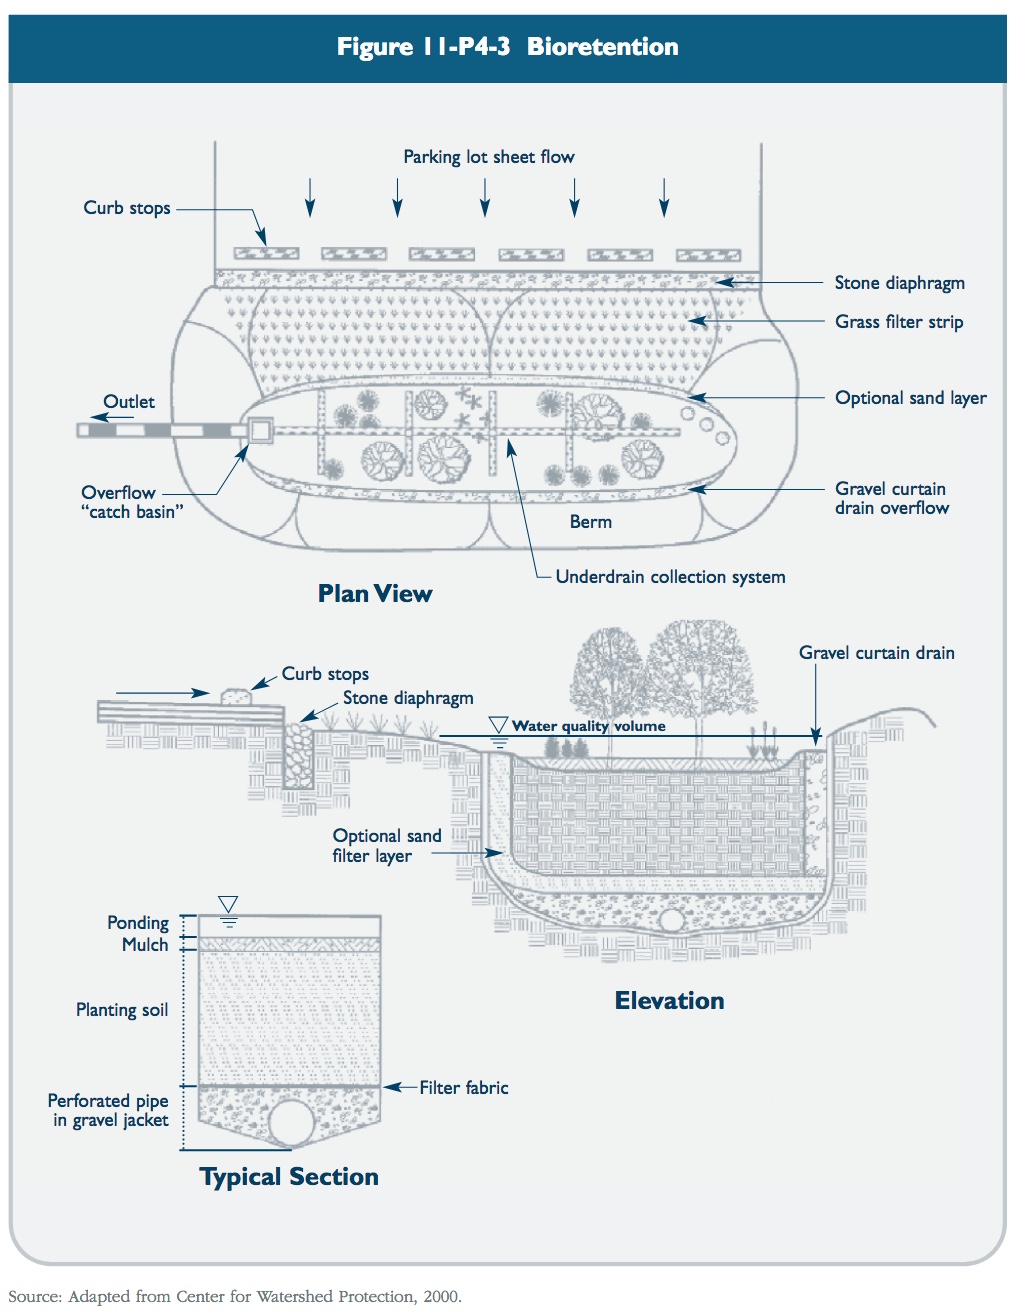 Figure 11-P4-3 Bioretention schematic